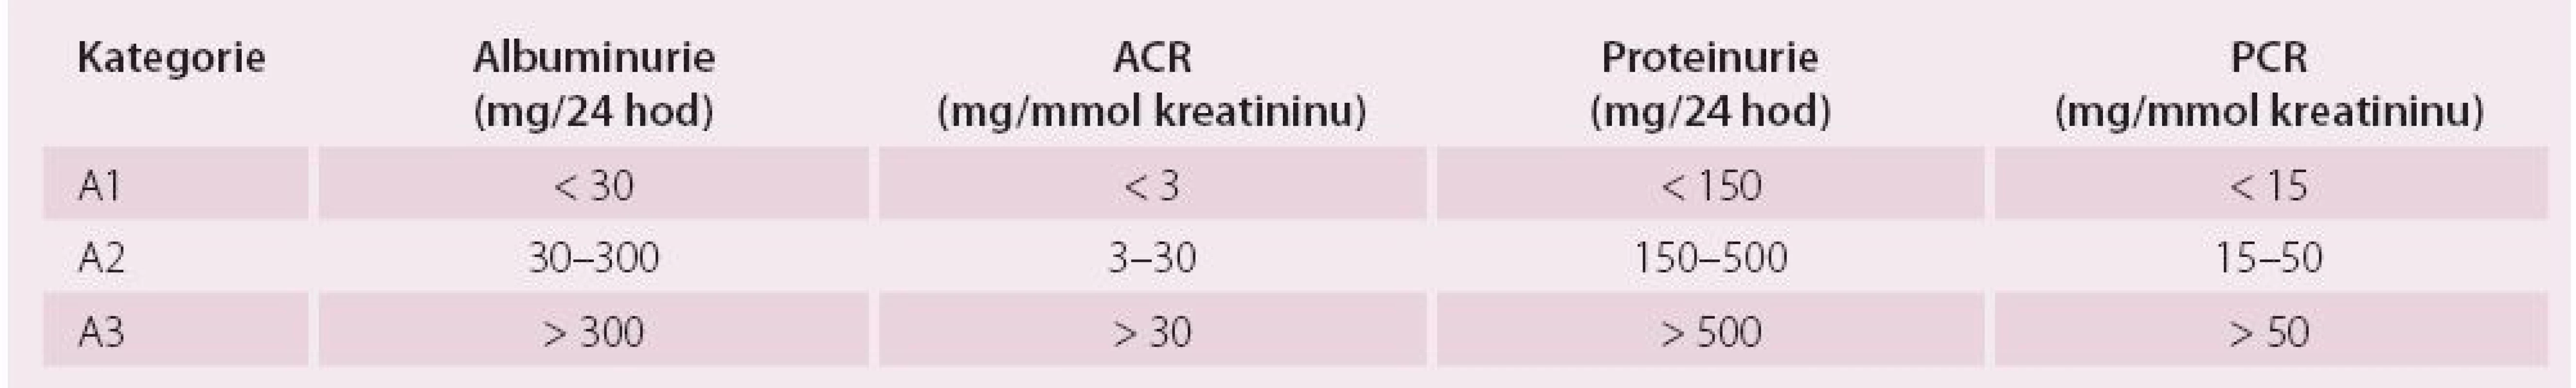 Kategorie chronického onemocnění ledvin podle albuminurie a porovnání s proteinurií.